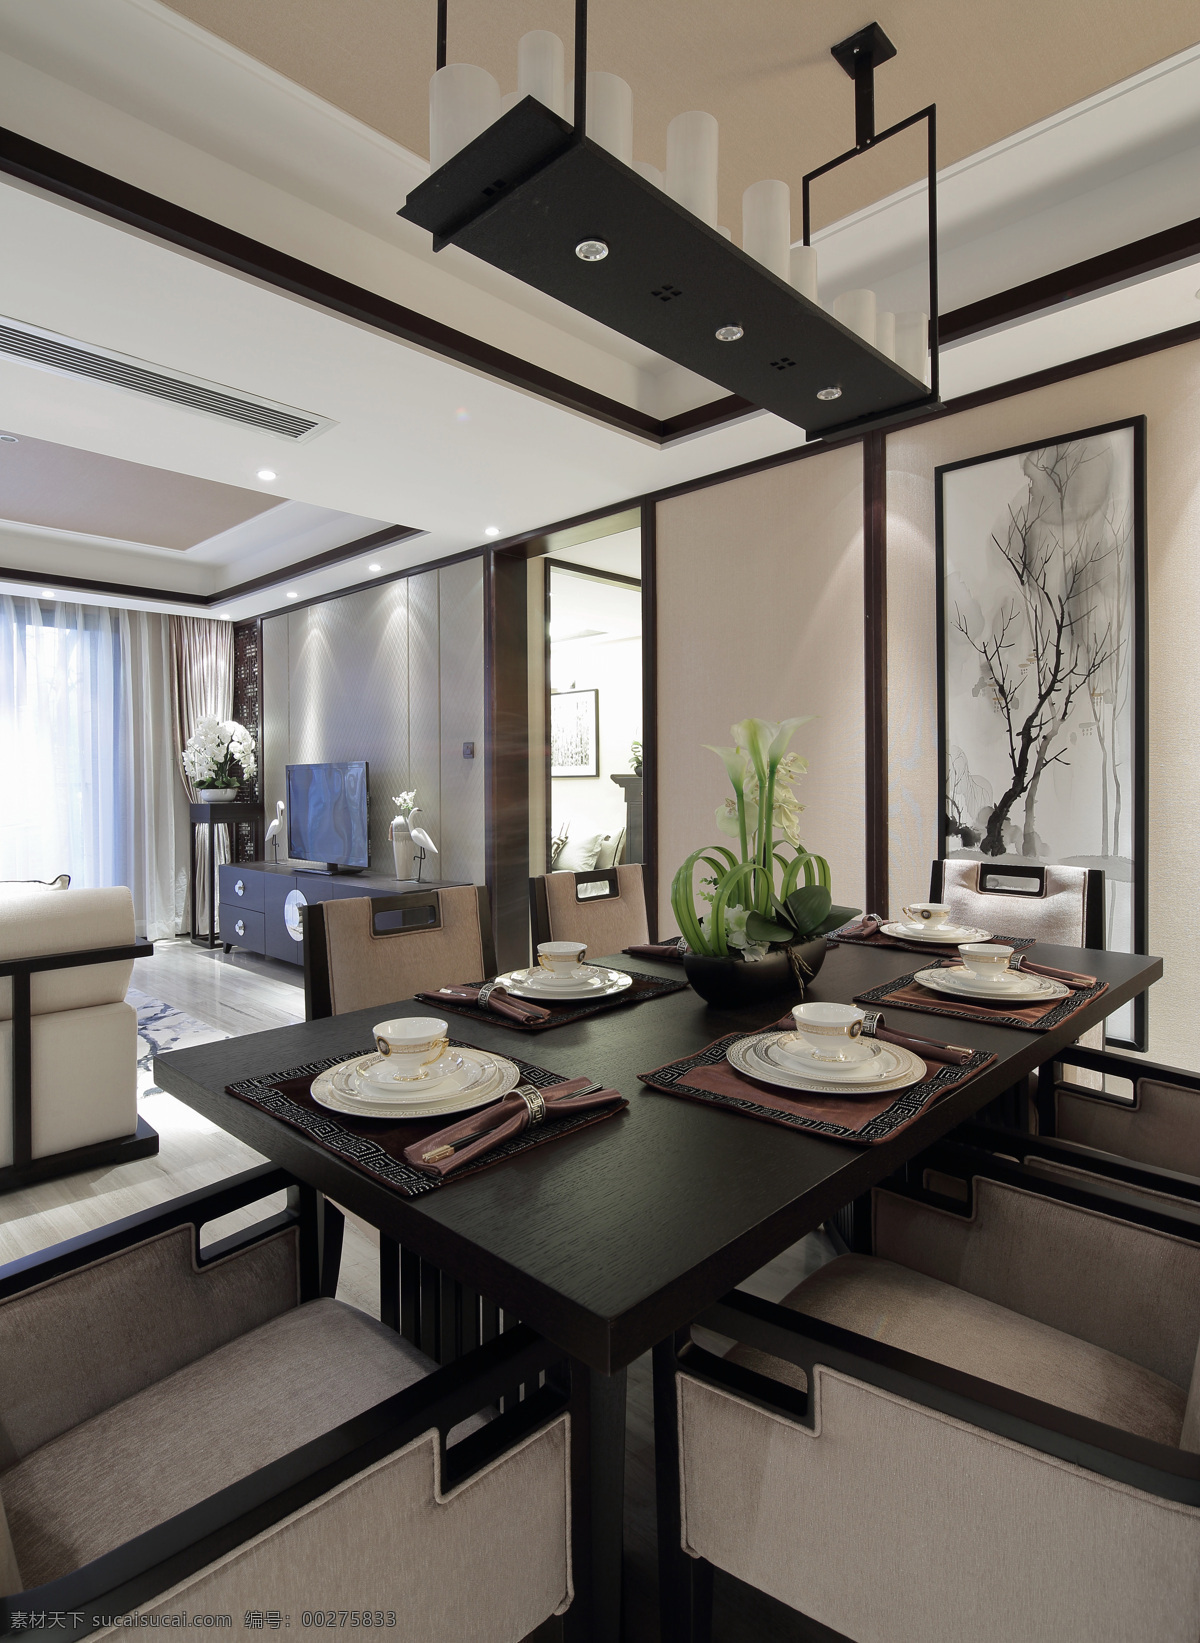 室内 餐厅 中式 现代 装修 效果图 黑色 长方形餐桌 白色瓷质餐具 清新园艺 创意吊灯